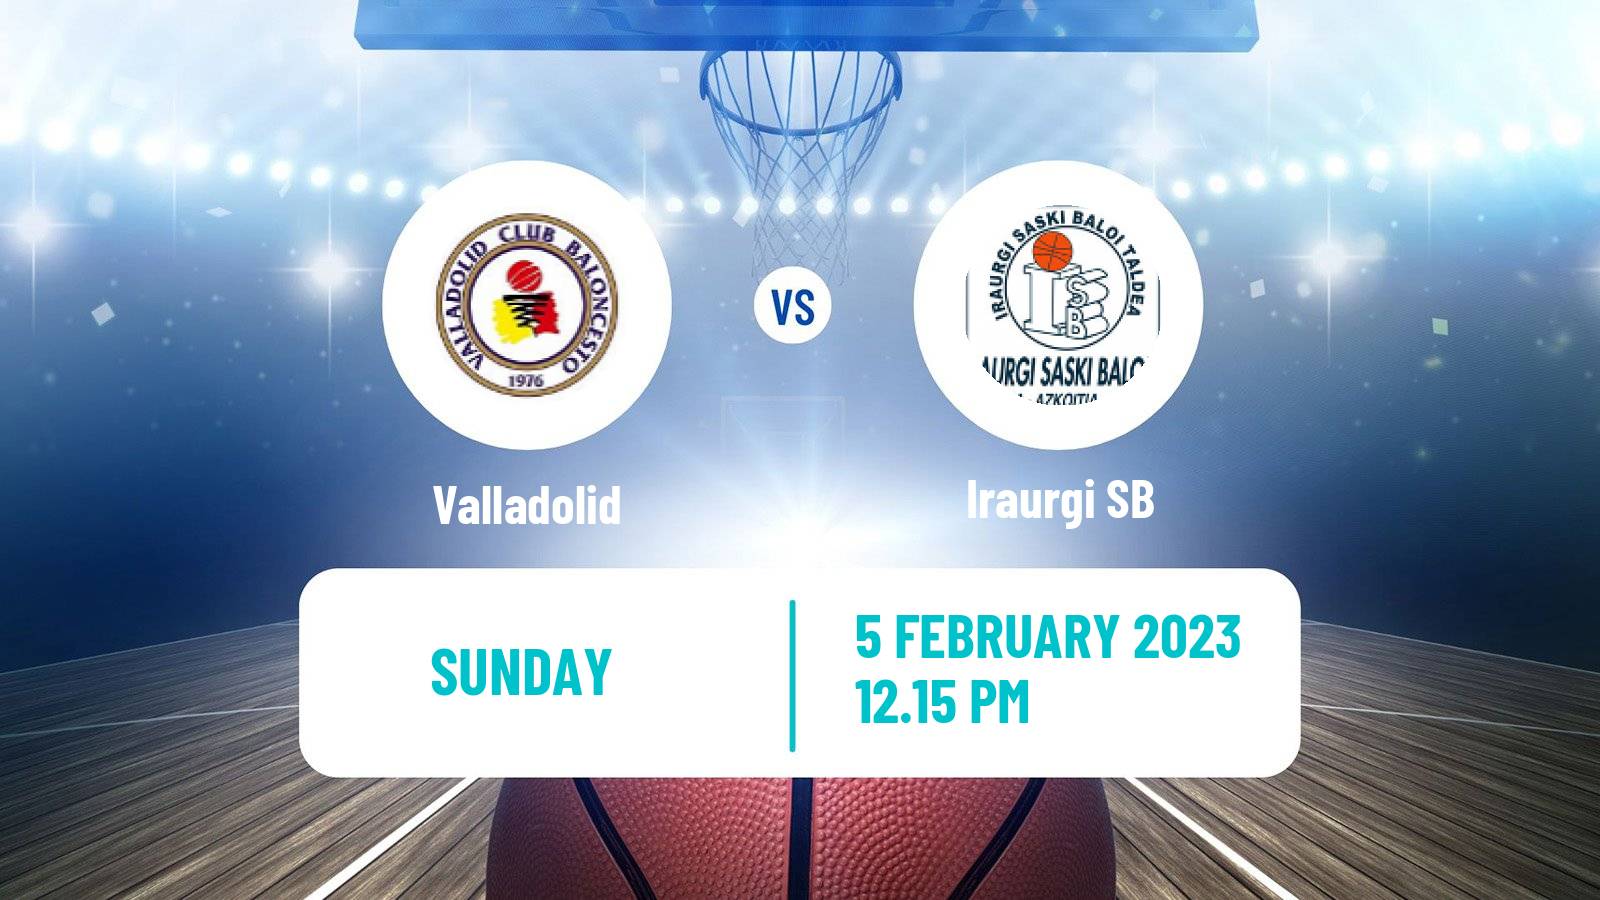 Basketball Spanish LEB Oro Valladolid - Iraurgi SB